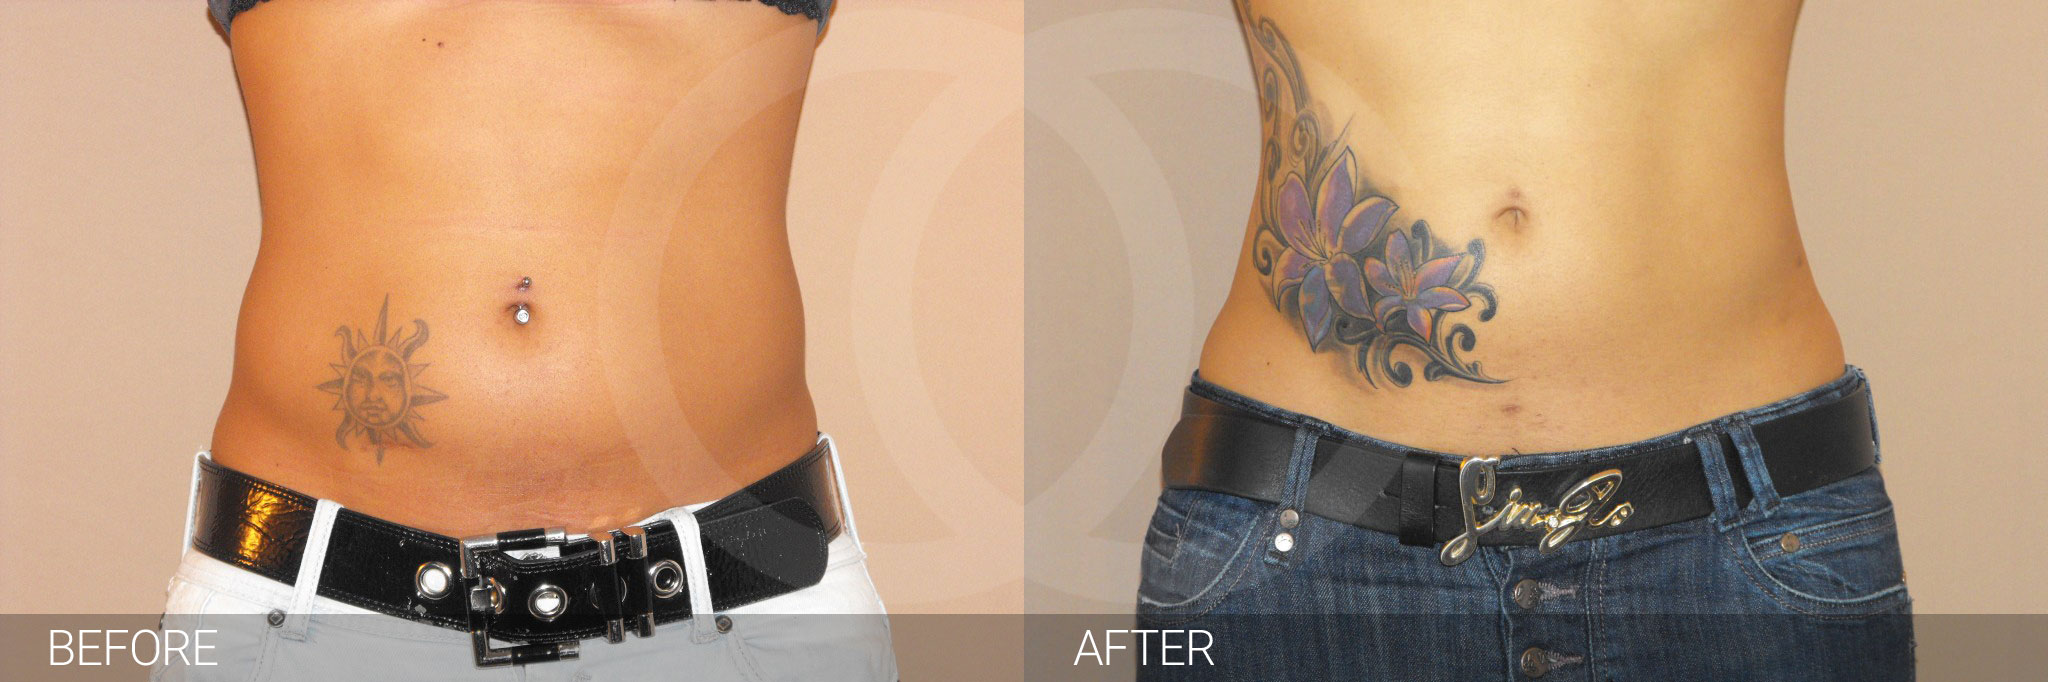 Antes y después Liposucción abdominal fotos reales de pacientes 2.1 | Ocean Clinic Marbella Madrid